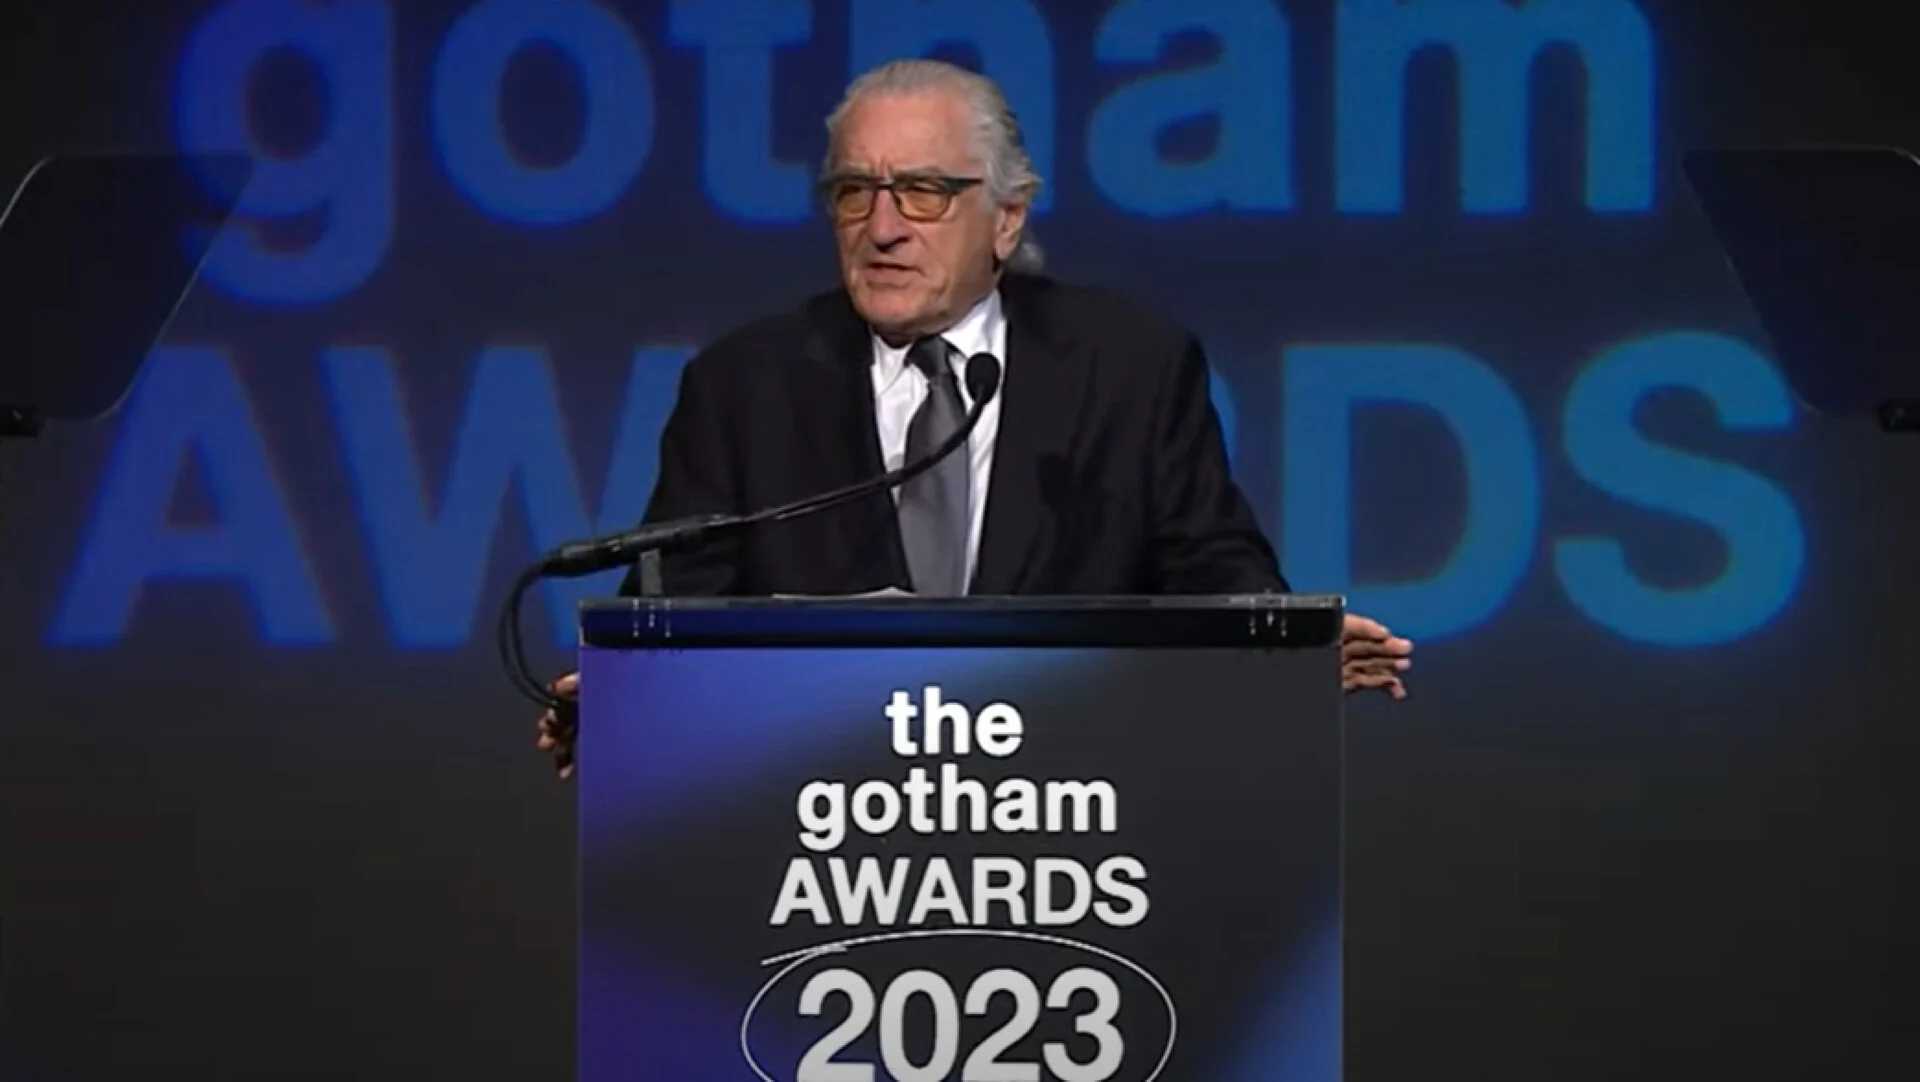 Ρόμπερτ Ντε Νίρο: Κατήγγειλε ότι λογοκρίθηκε η ομιλία του στα Gotham Awards